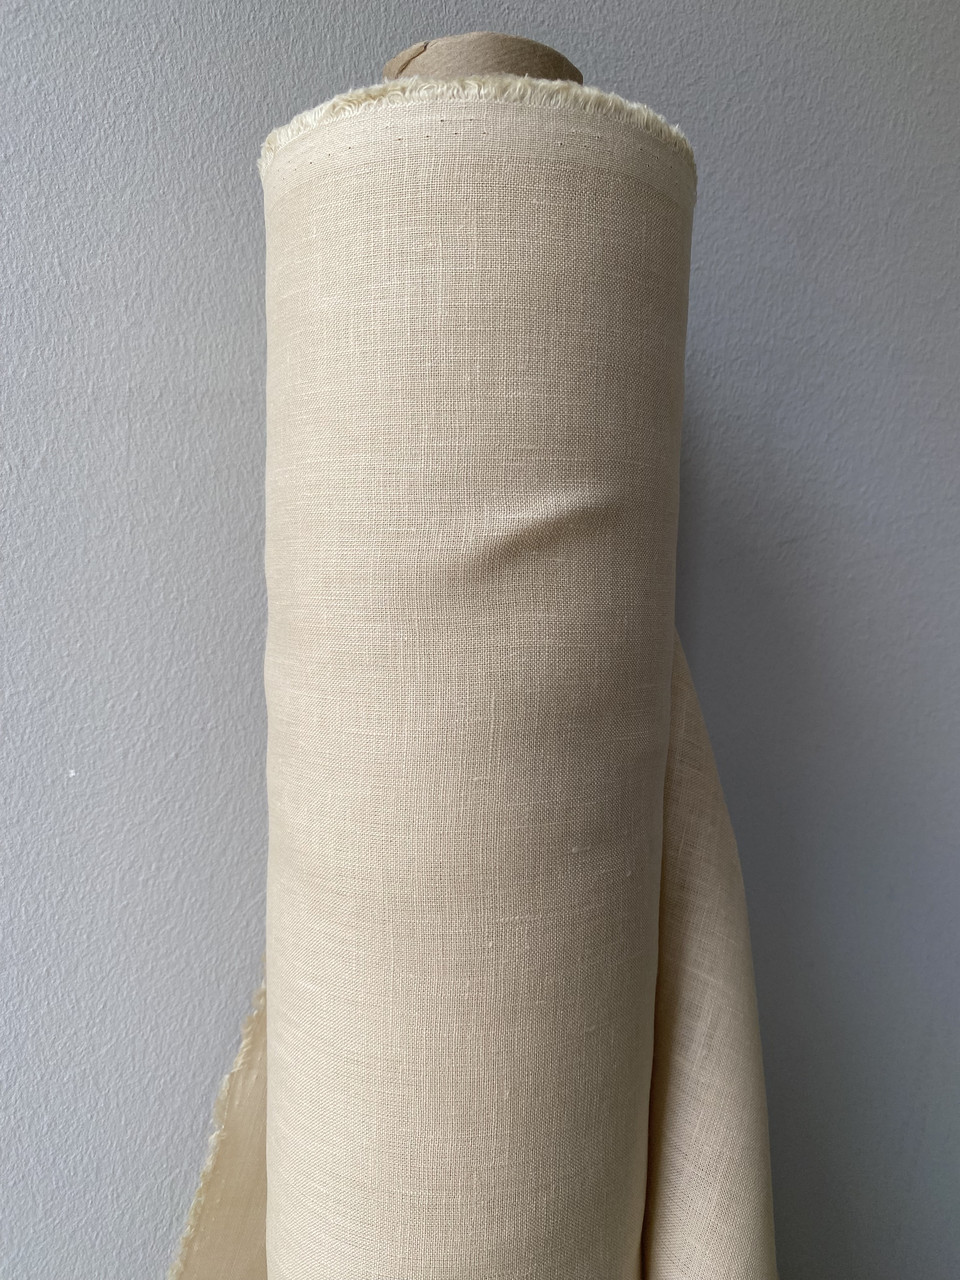 Кремова натуральна лляна тканина, колір 606